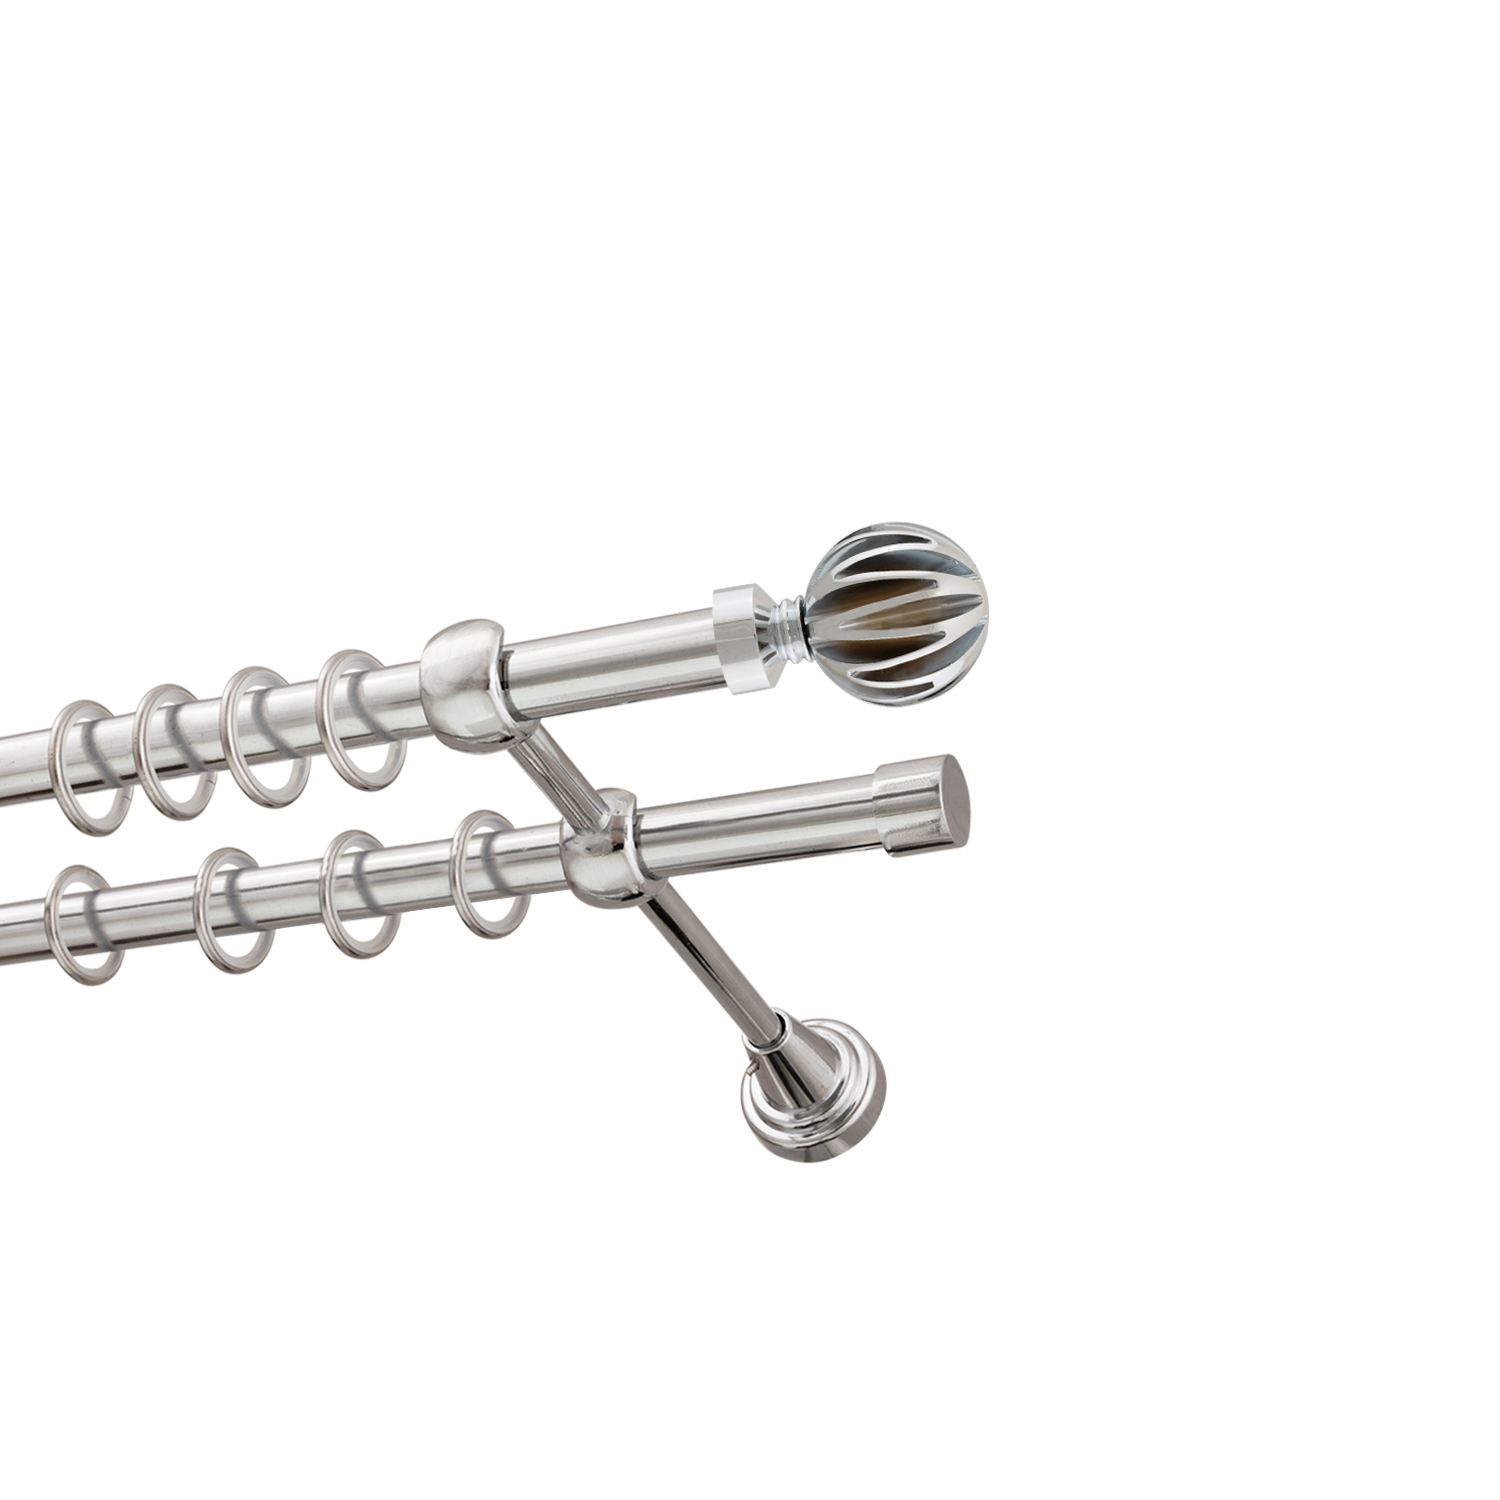 Металлический карниз для штор Шафран, двухрядный 16/16 мм, серебро, гладкая штанга, длина 160 см